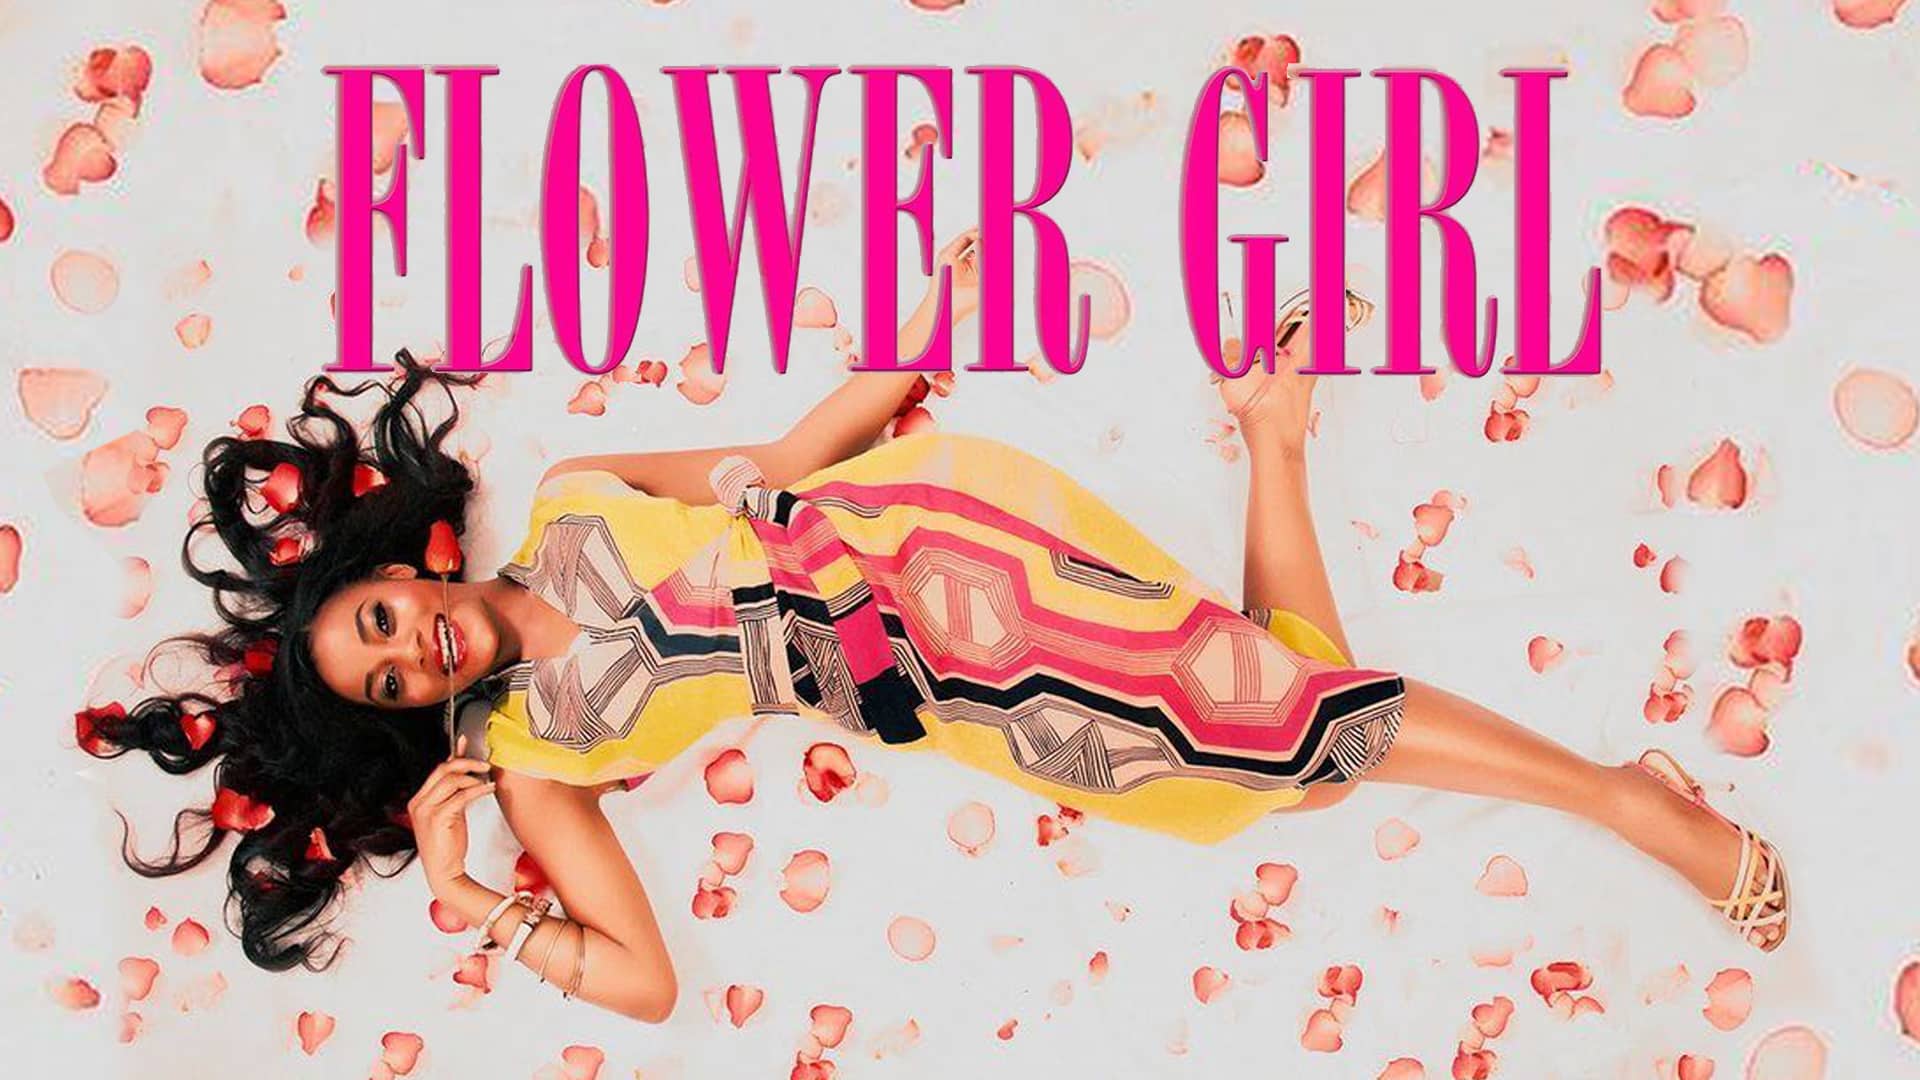 FLOWER GIRL Poster 1920x1080 16x9